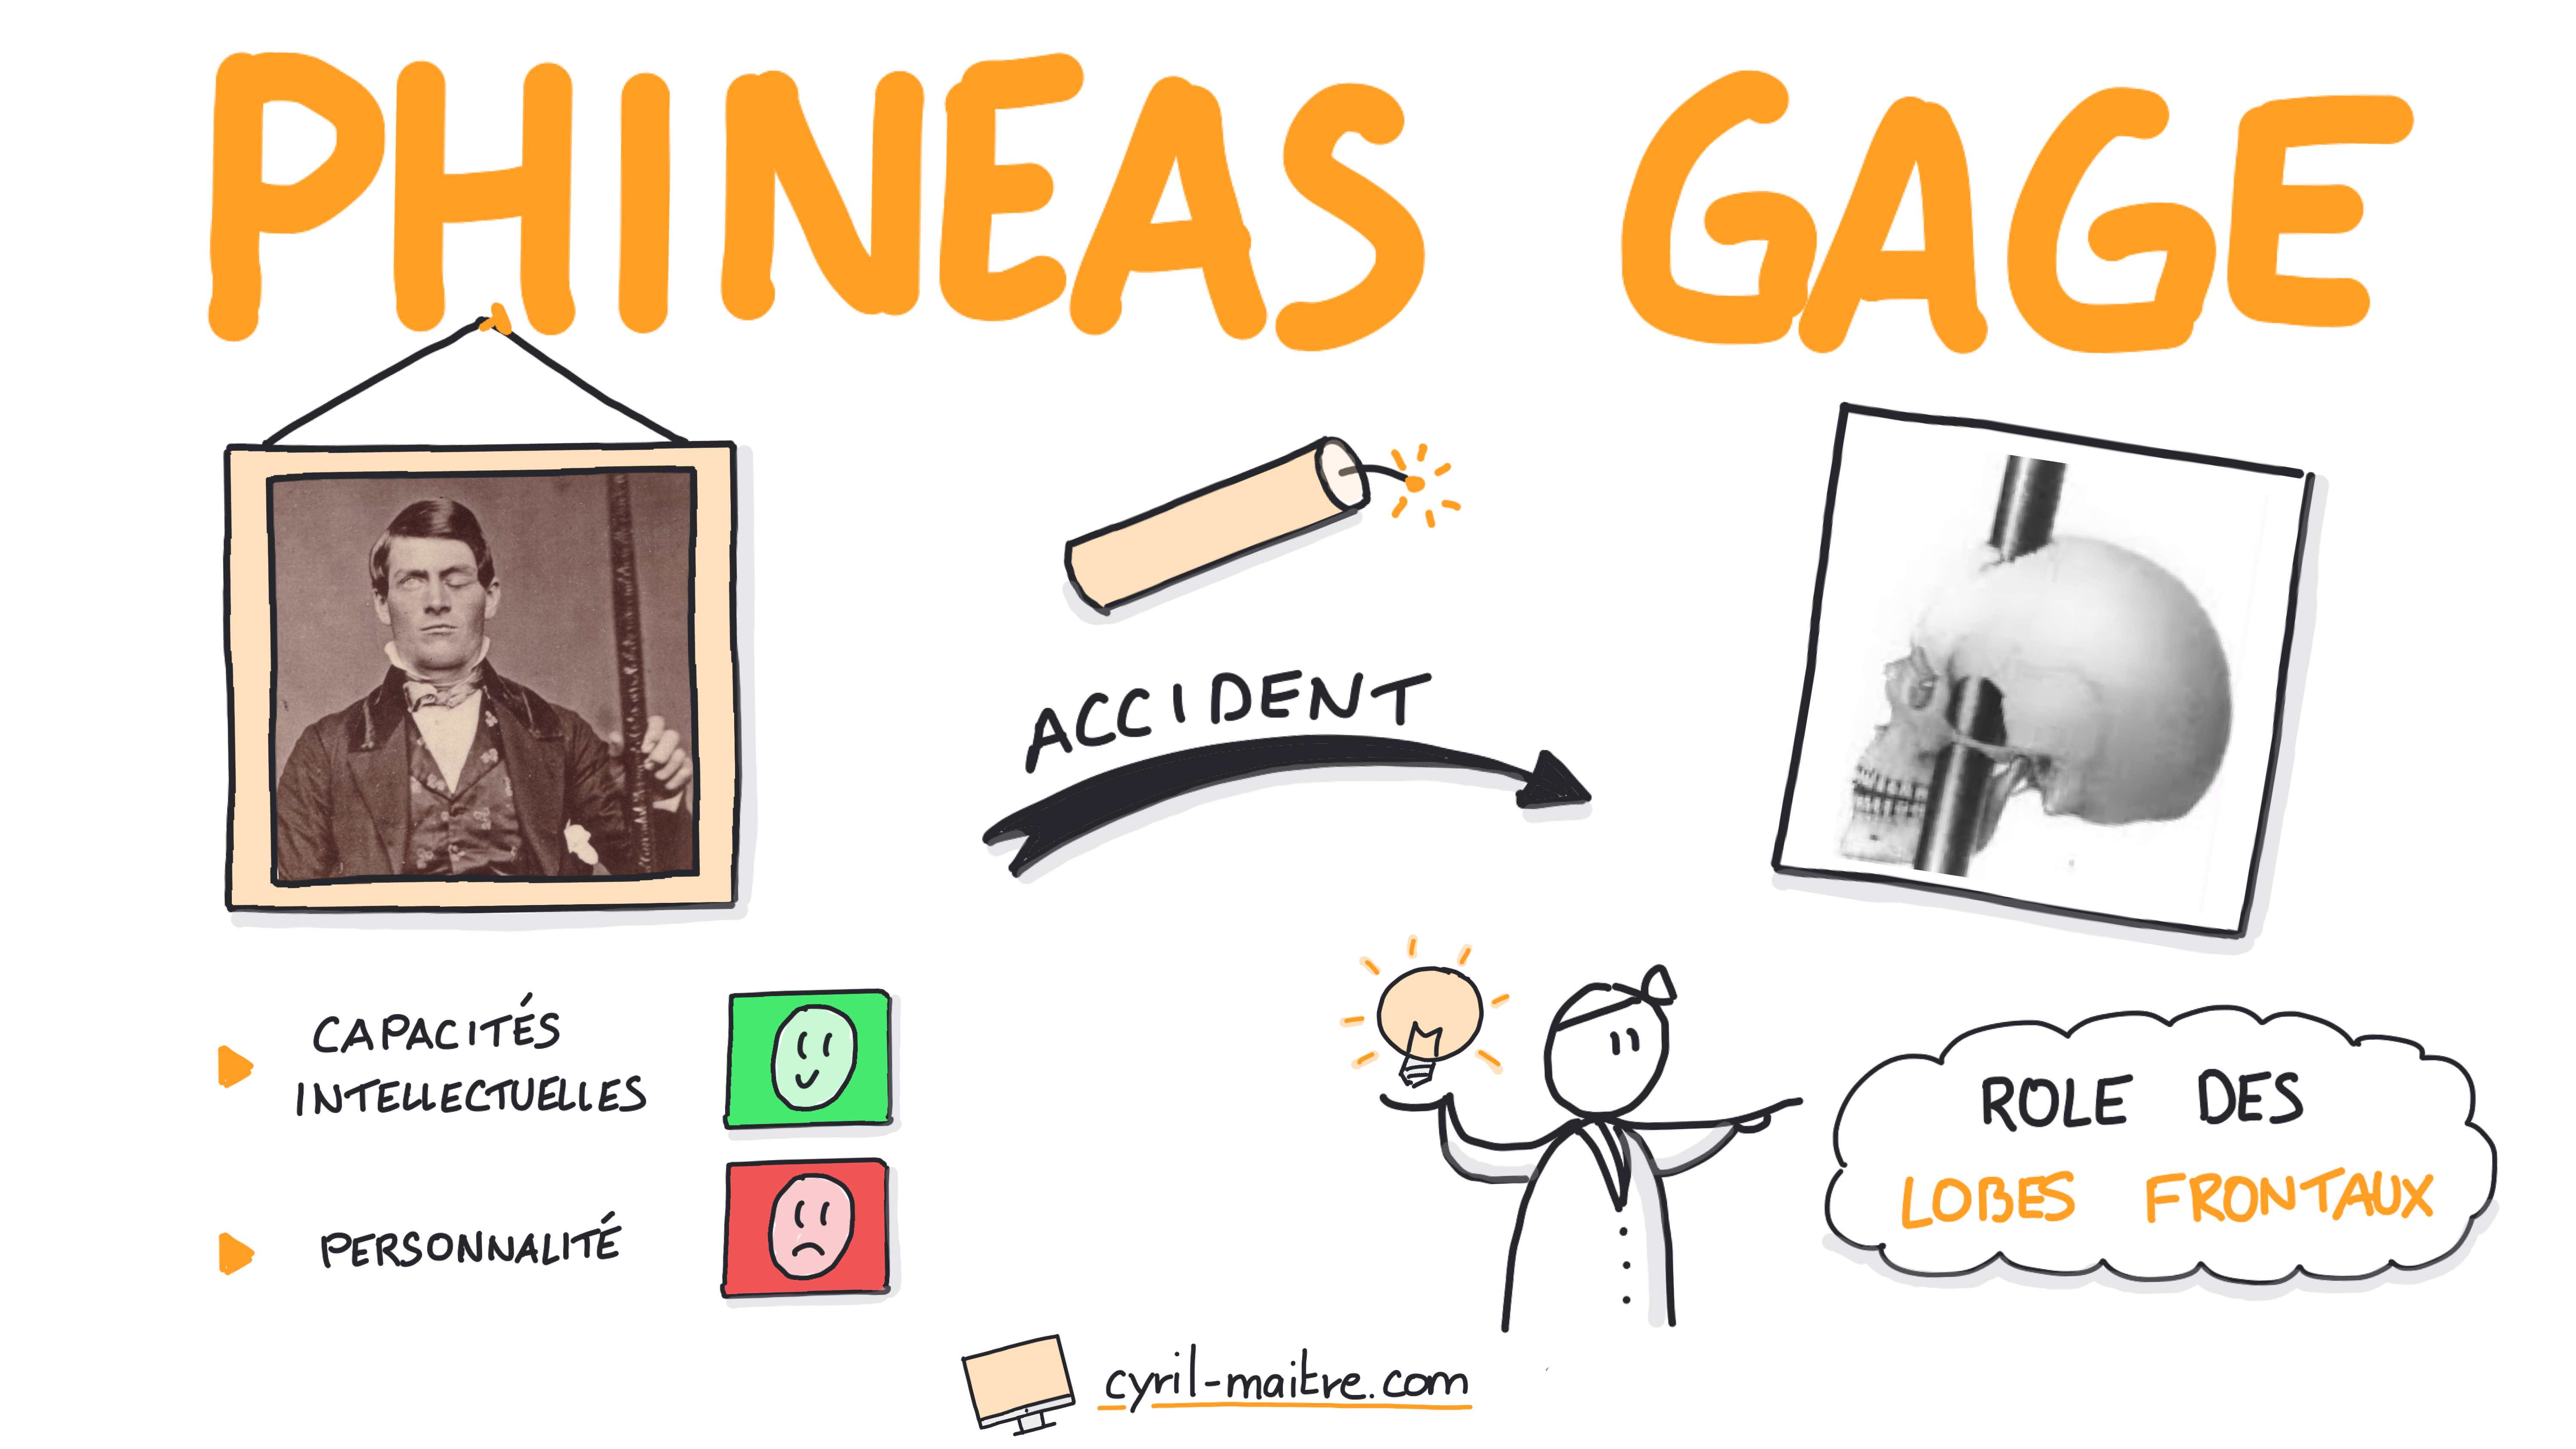 L'incroyable accident de Phineas Gage - les neurosciences en dessins